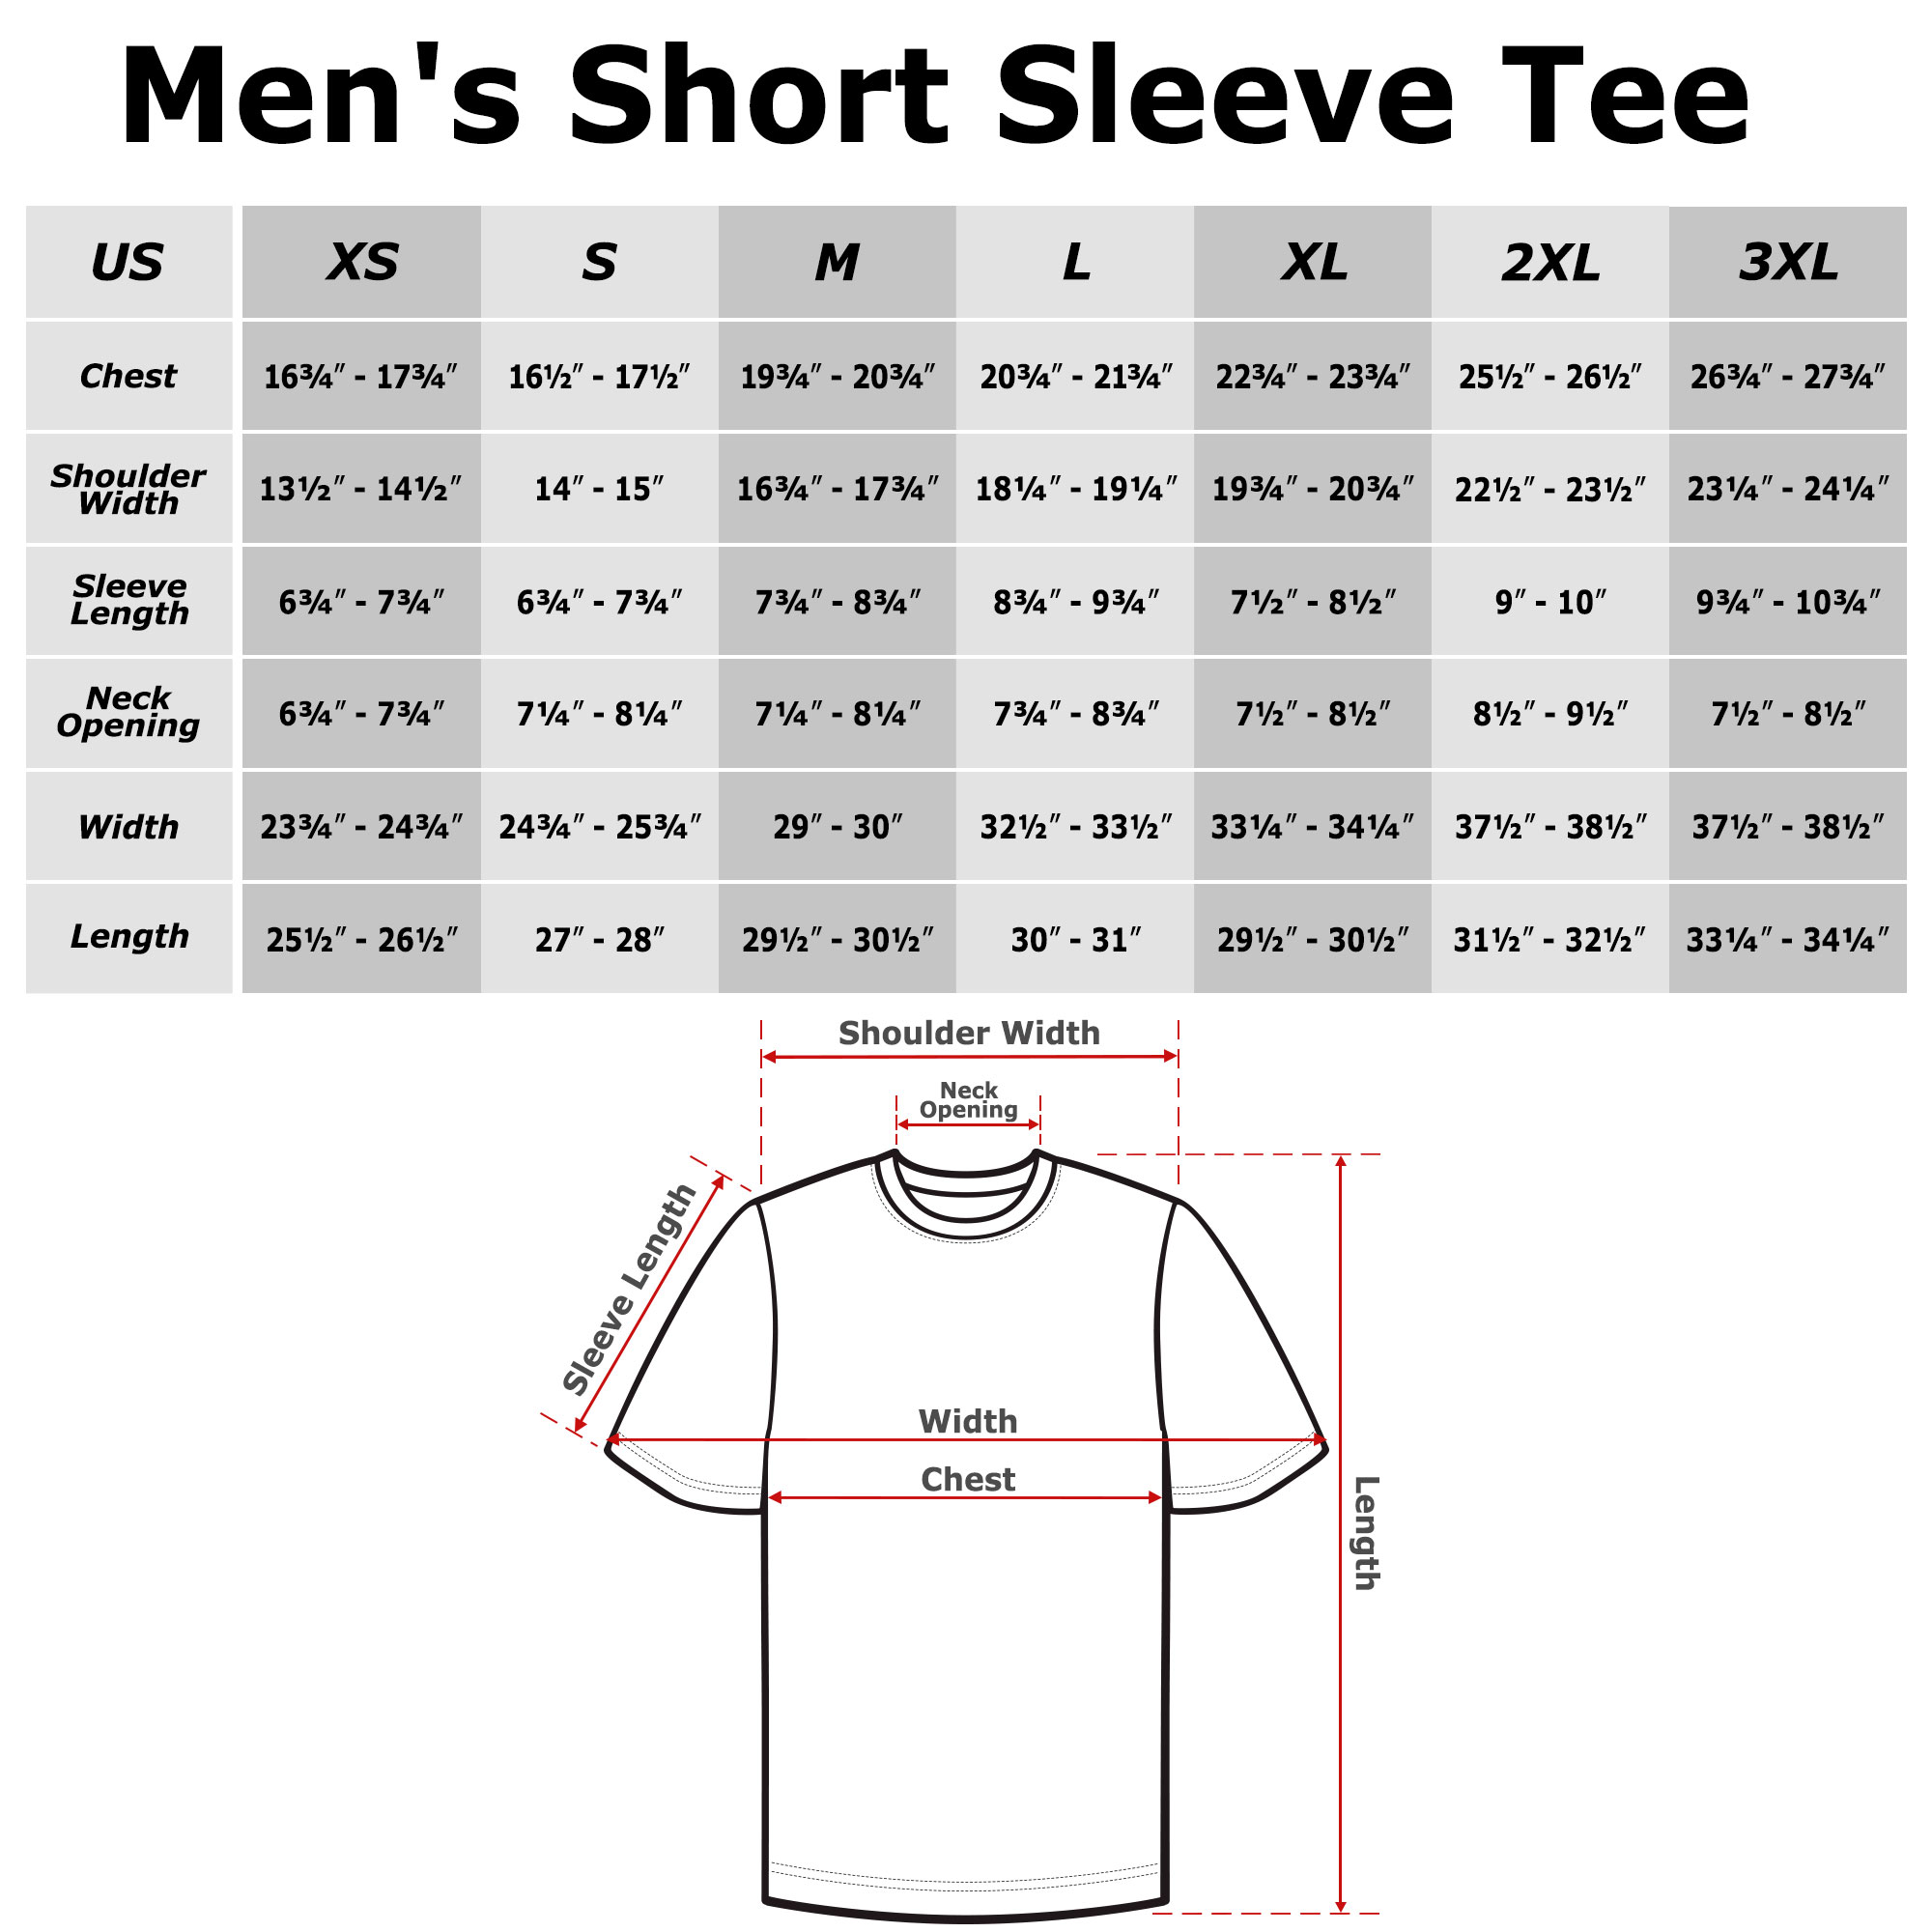 Steve Miller Band Men's Steve Miller Band Tie-Dye Logo  Graphic T-Shirt